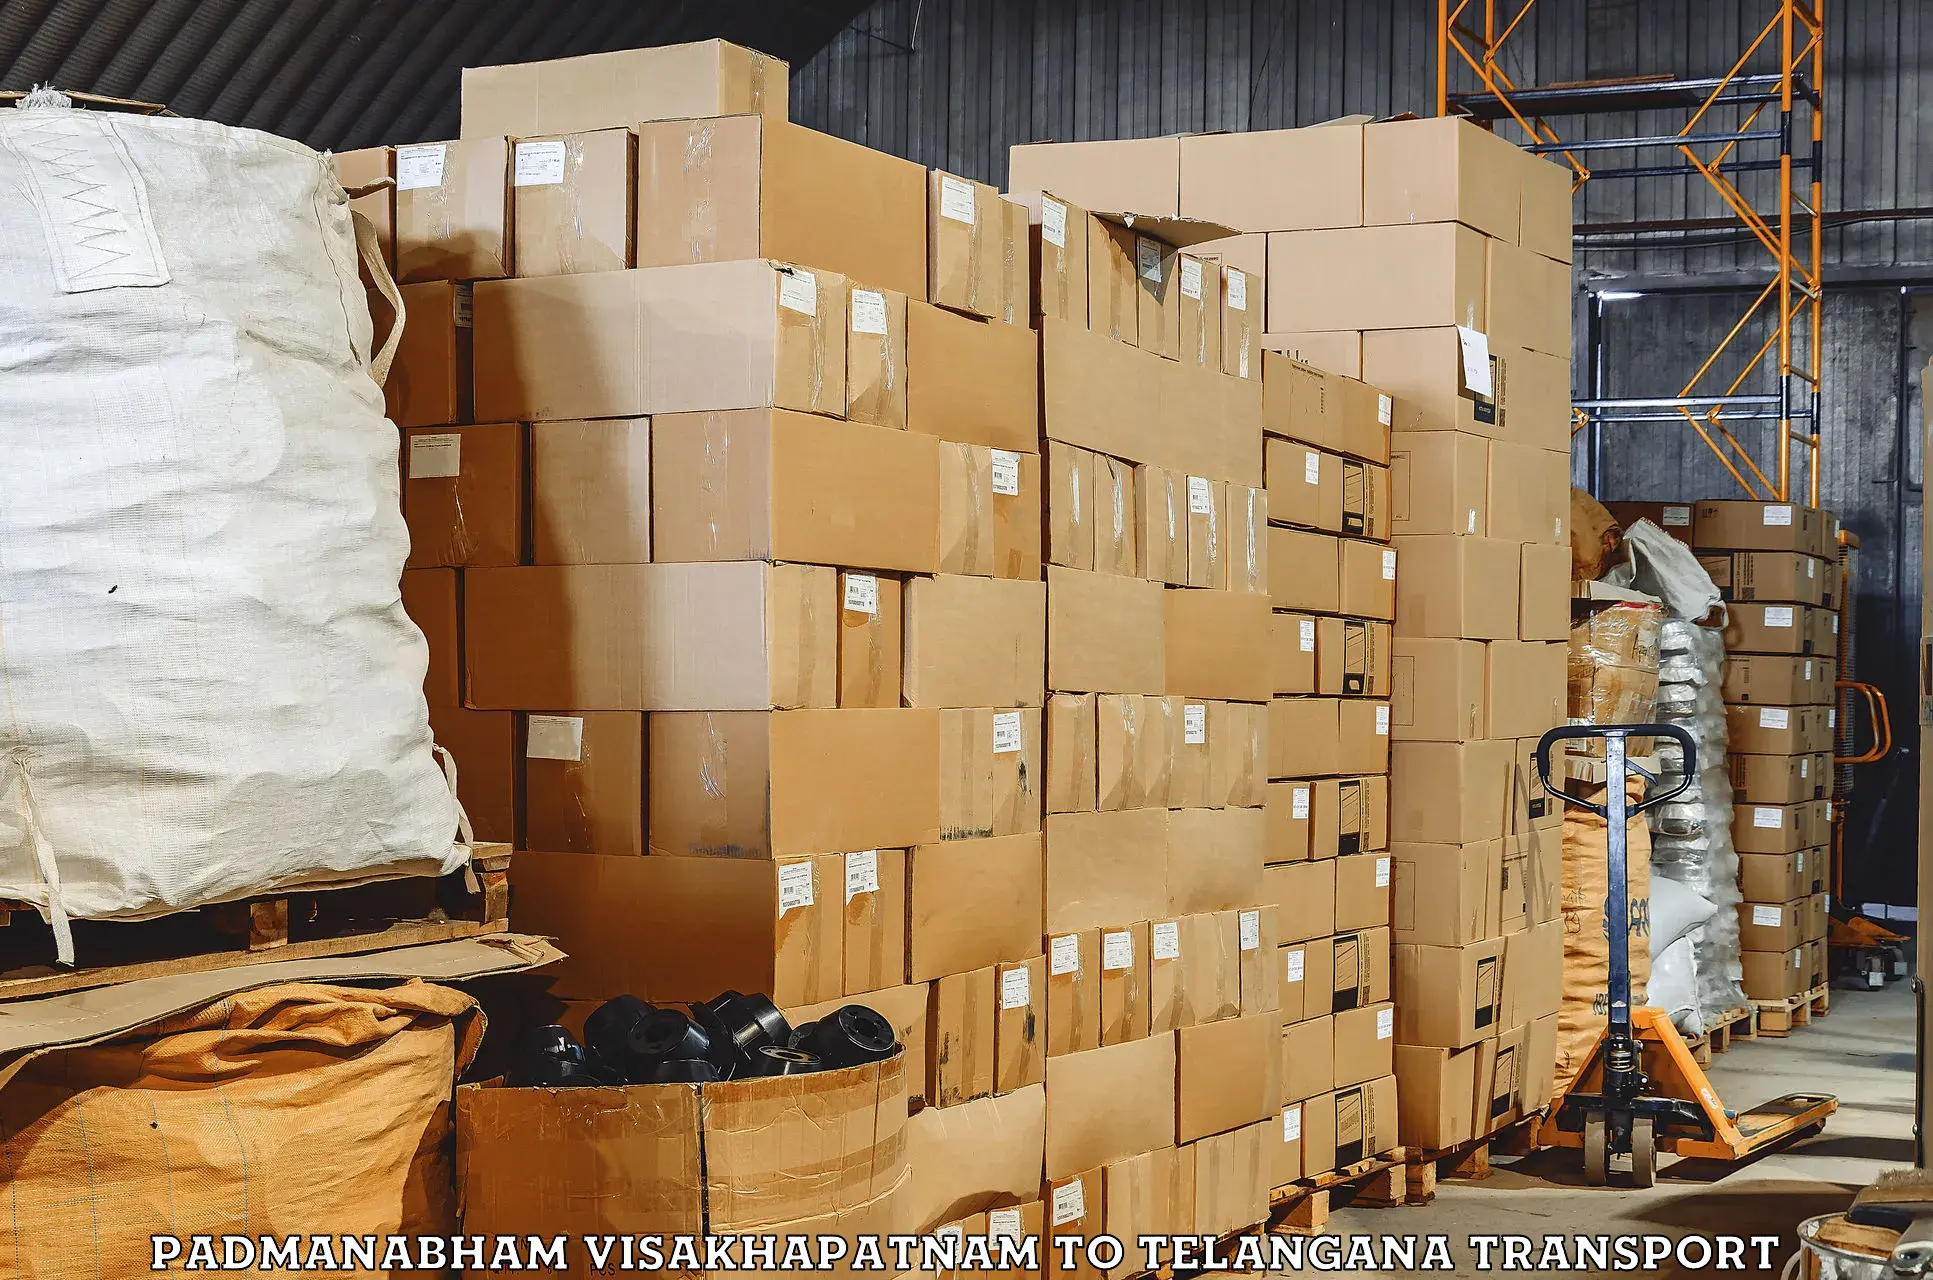 Goods delivery service Padmanabham Visakhapatnam to Yacharam